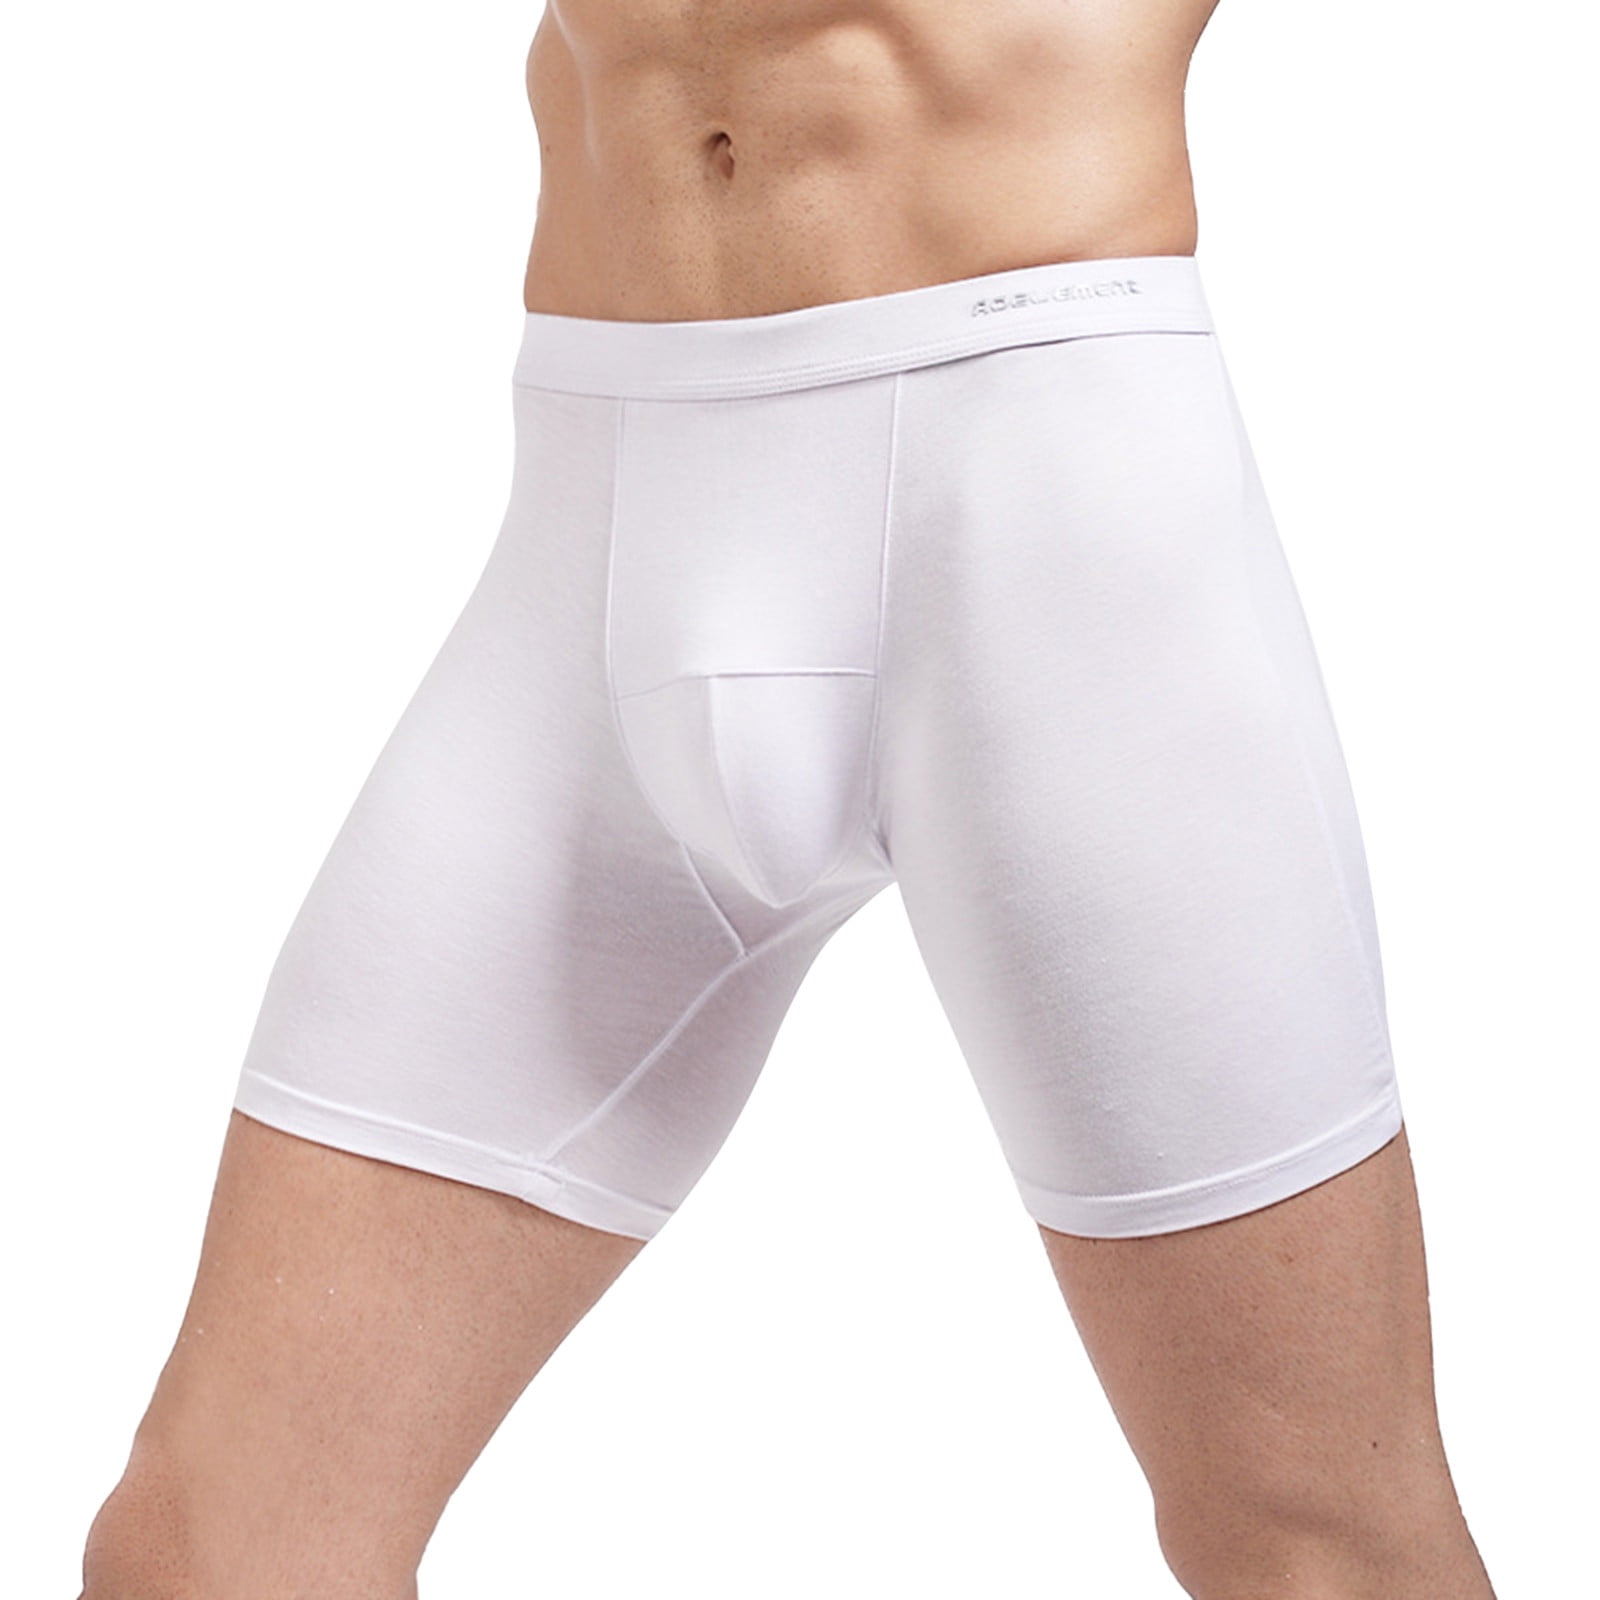 kpoplk Men Boxers Boxer Briefs, Moisture-Wicking Underwear, Cotton  No-Ride-up for Men(White,5XL)